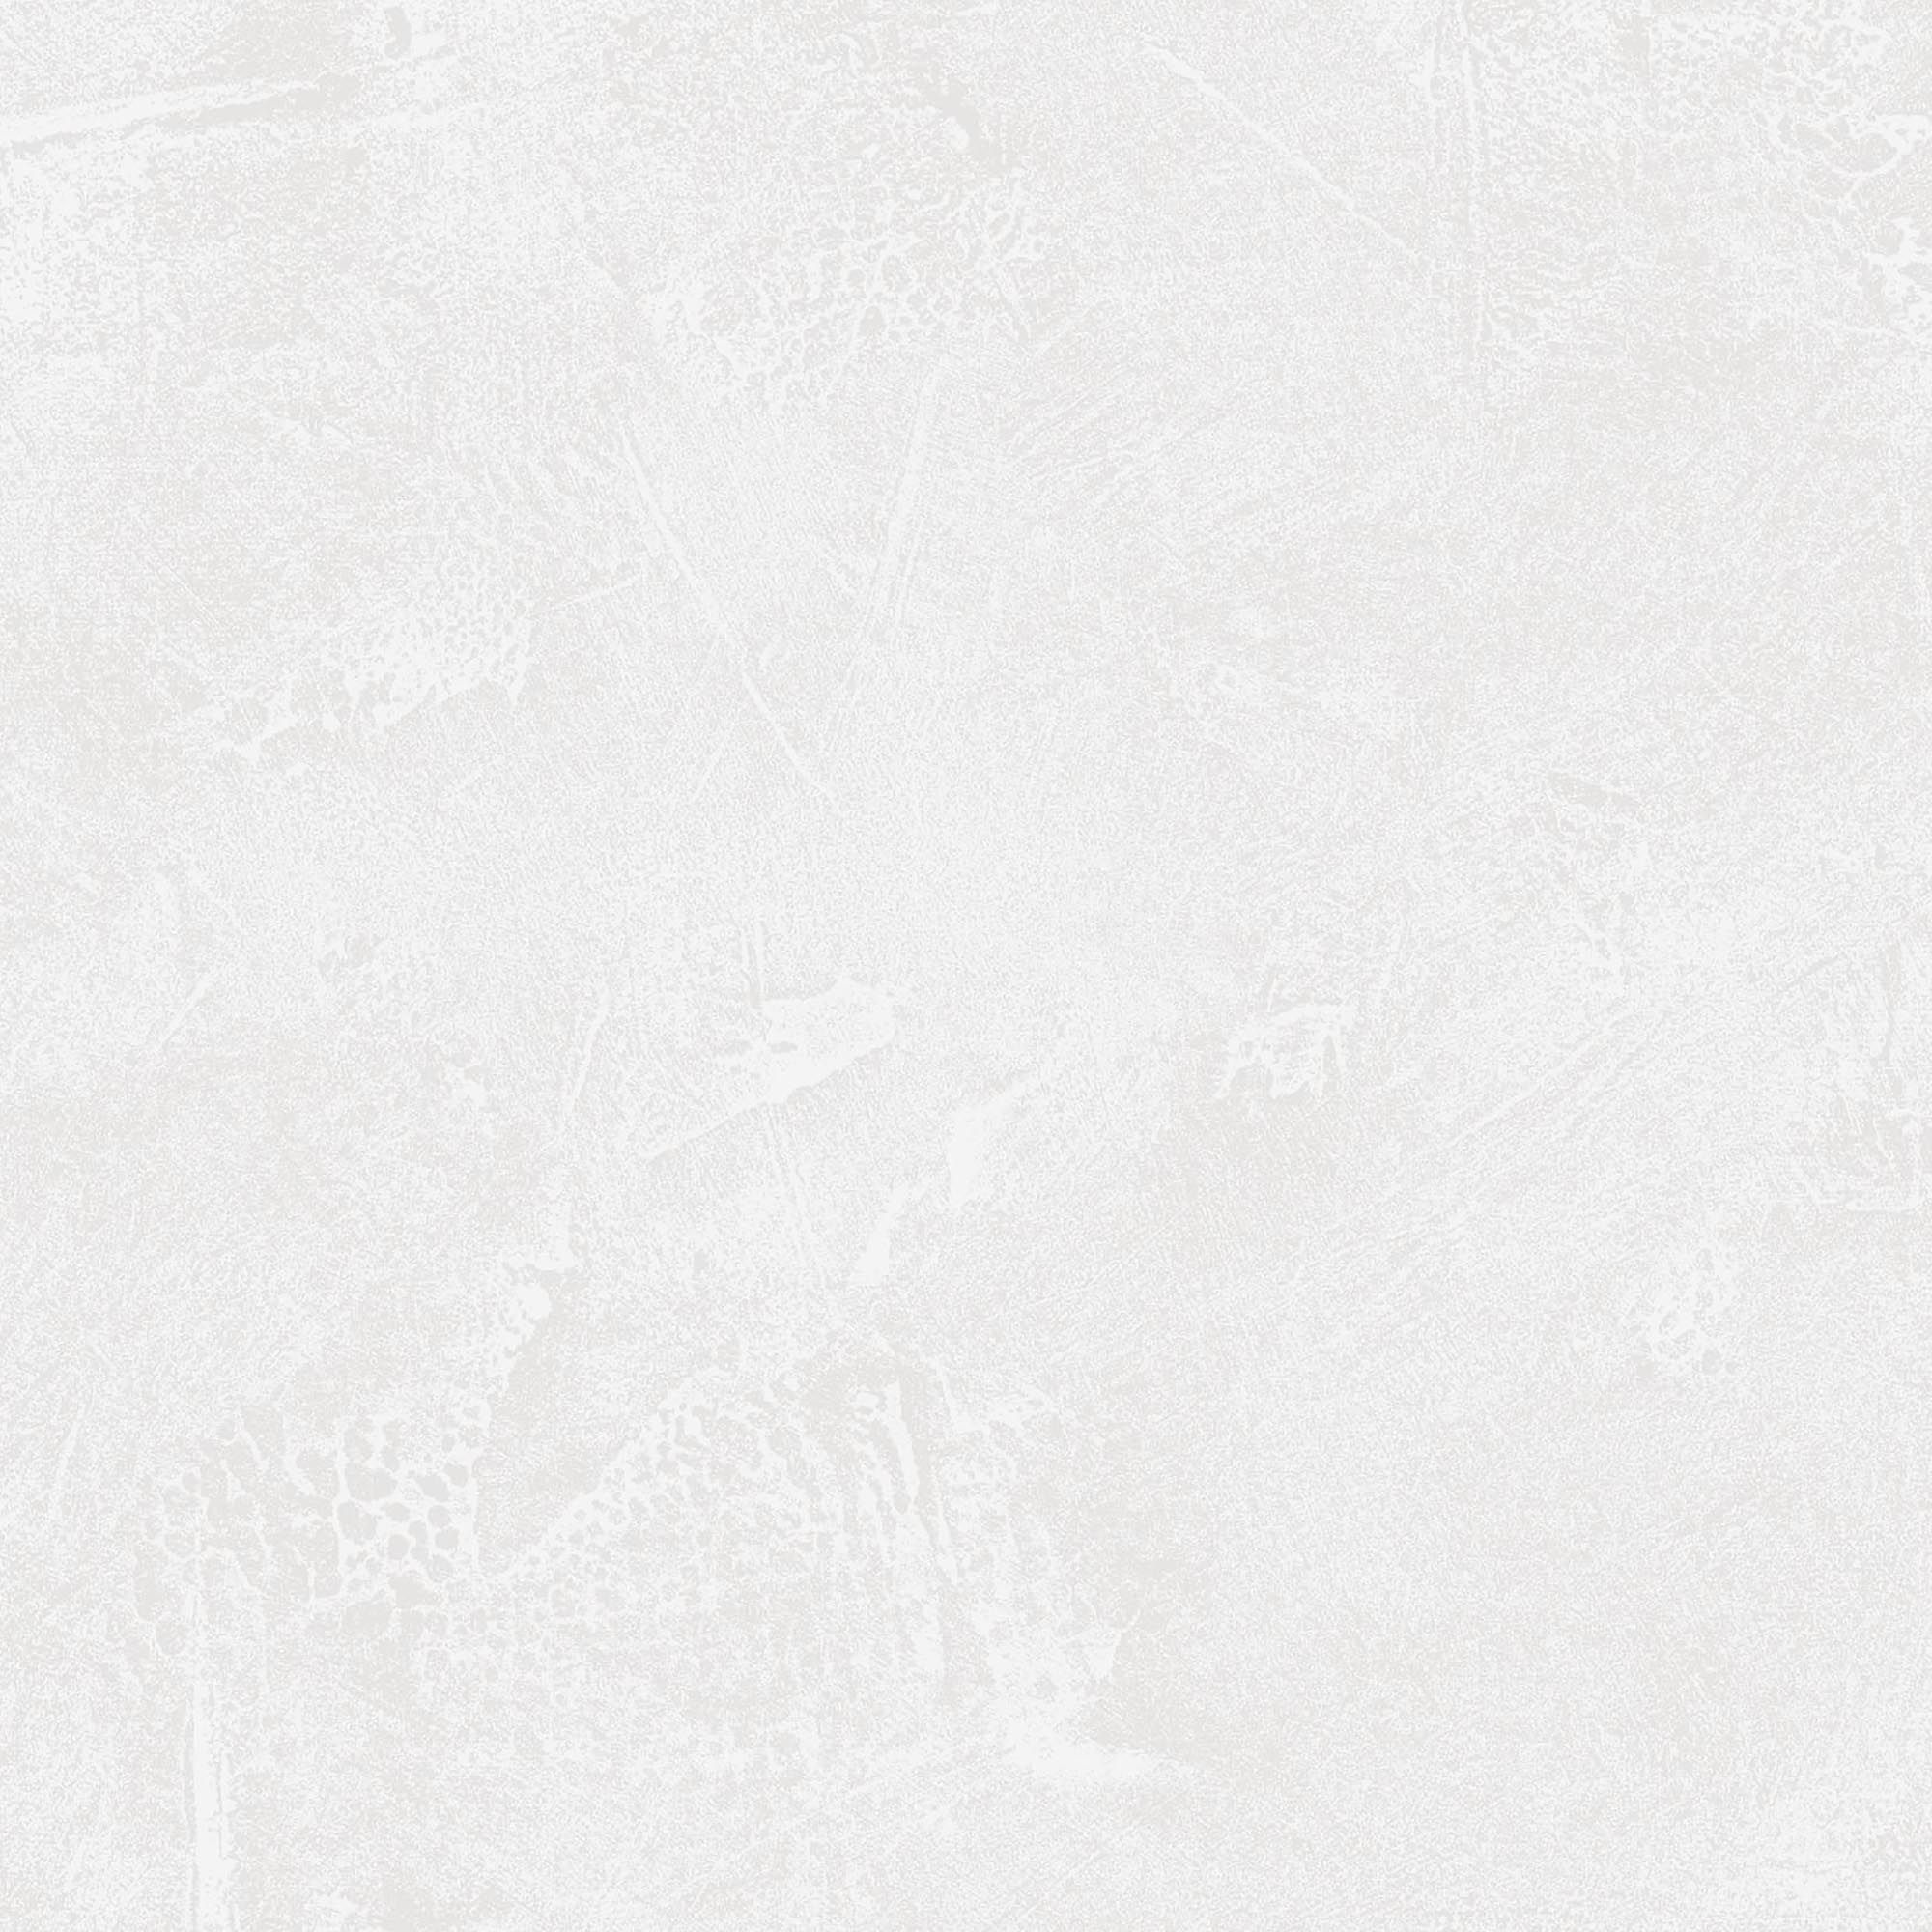 Lonrai White Plaster effect Textured Wallpaper Sample